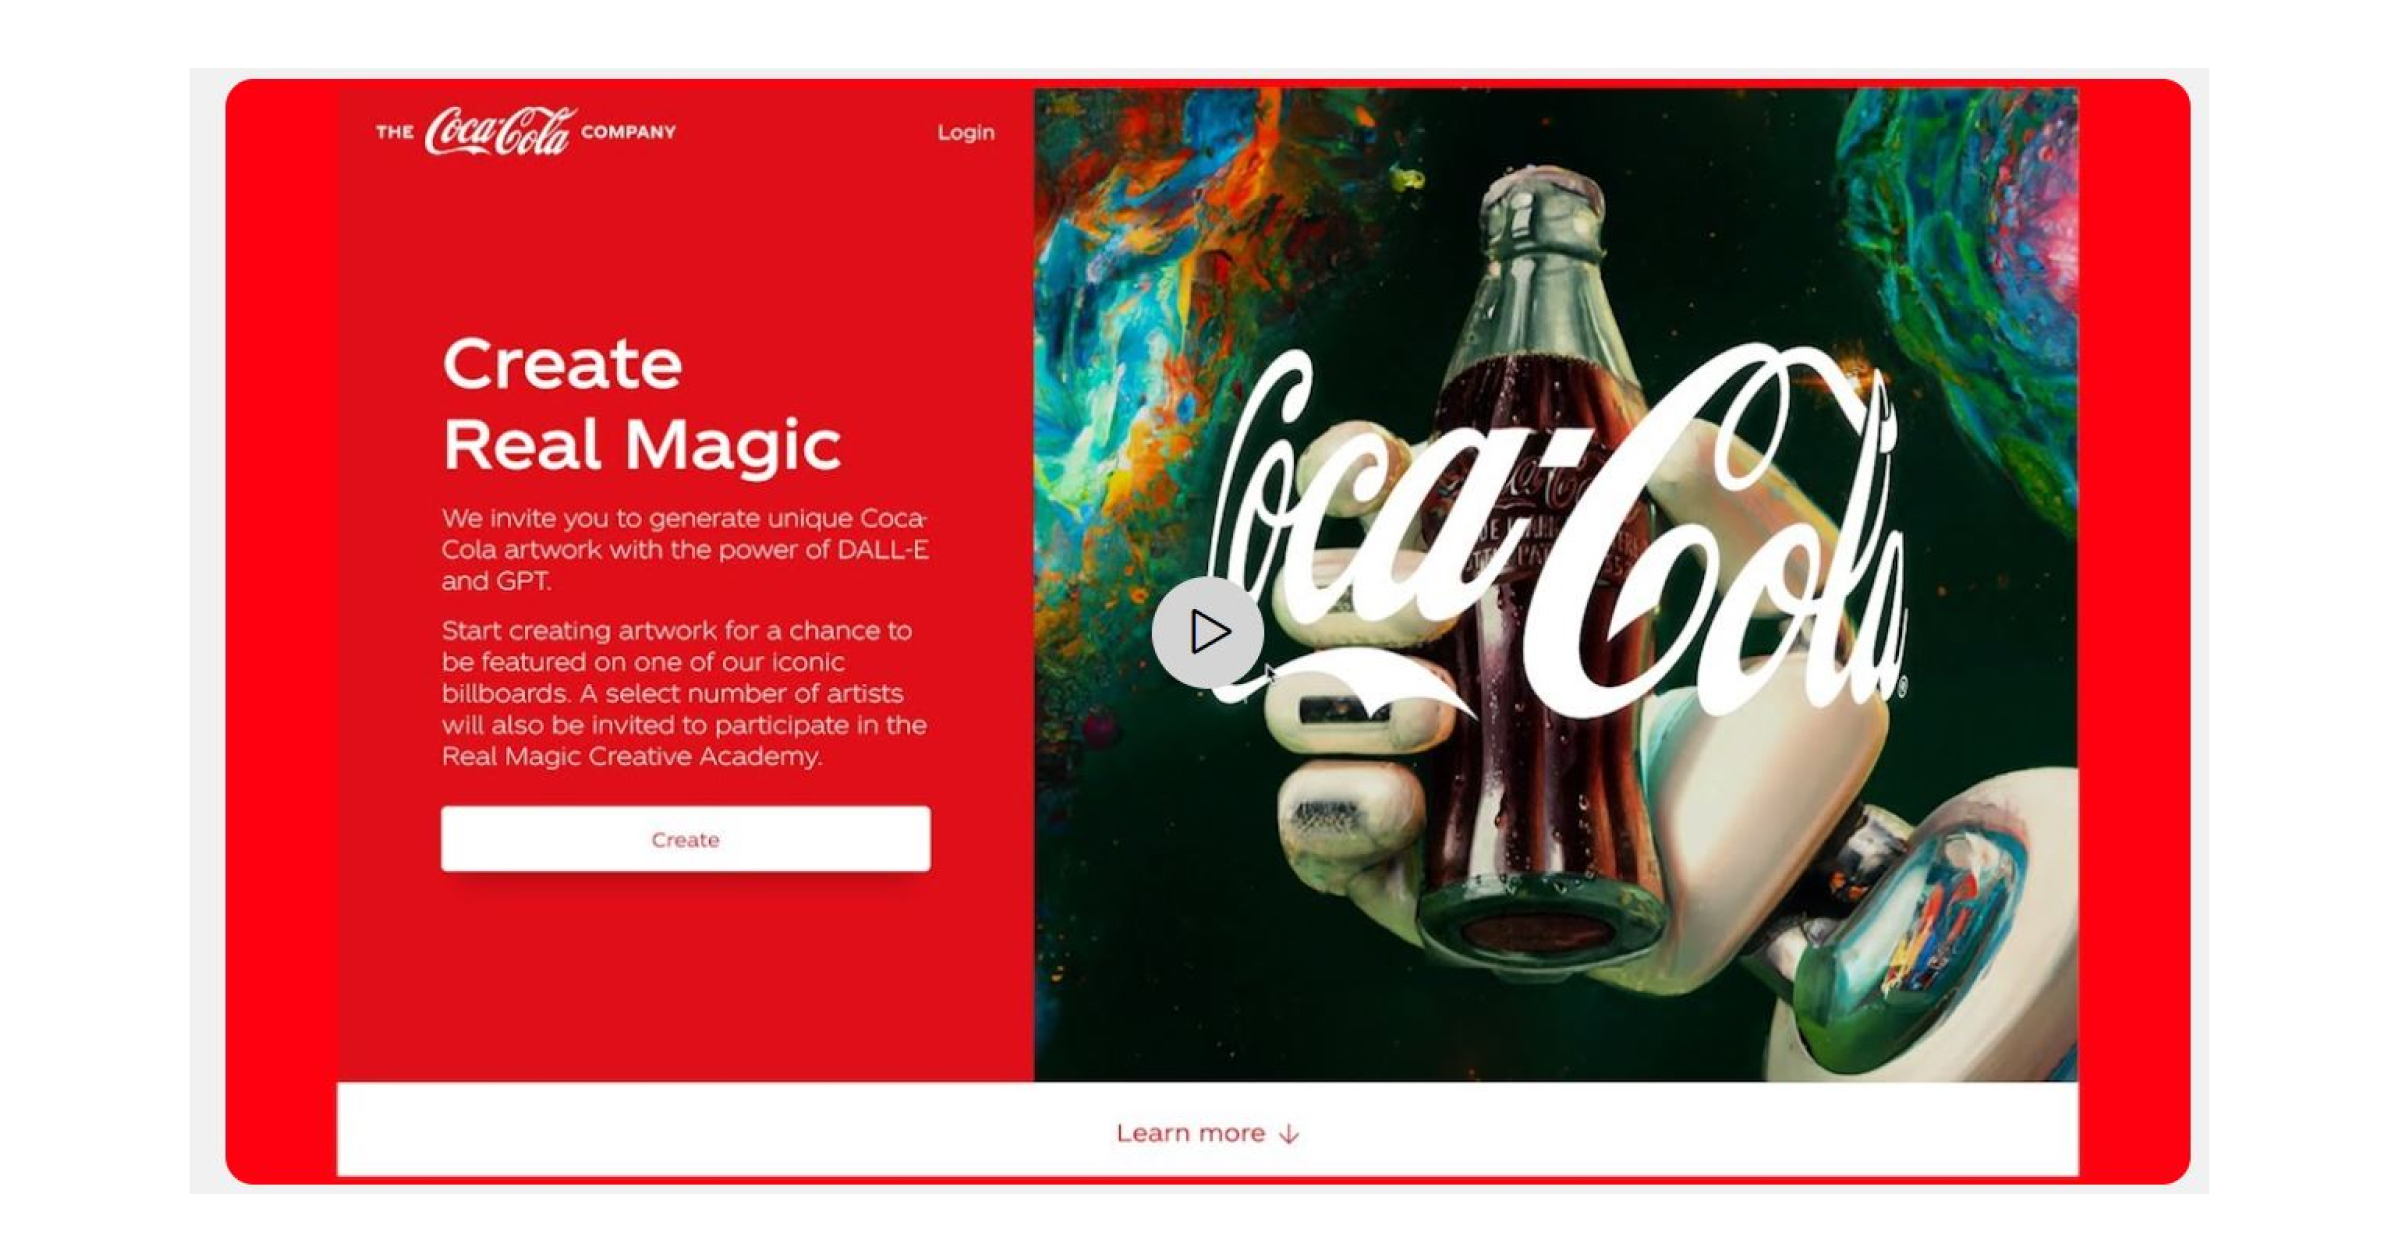 Coca-Cola's 'Create Real Magic' campaign